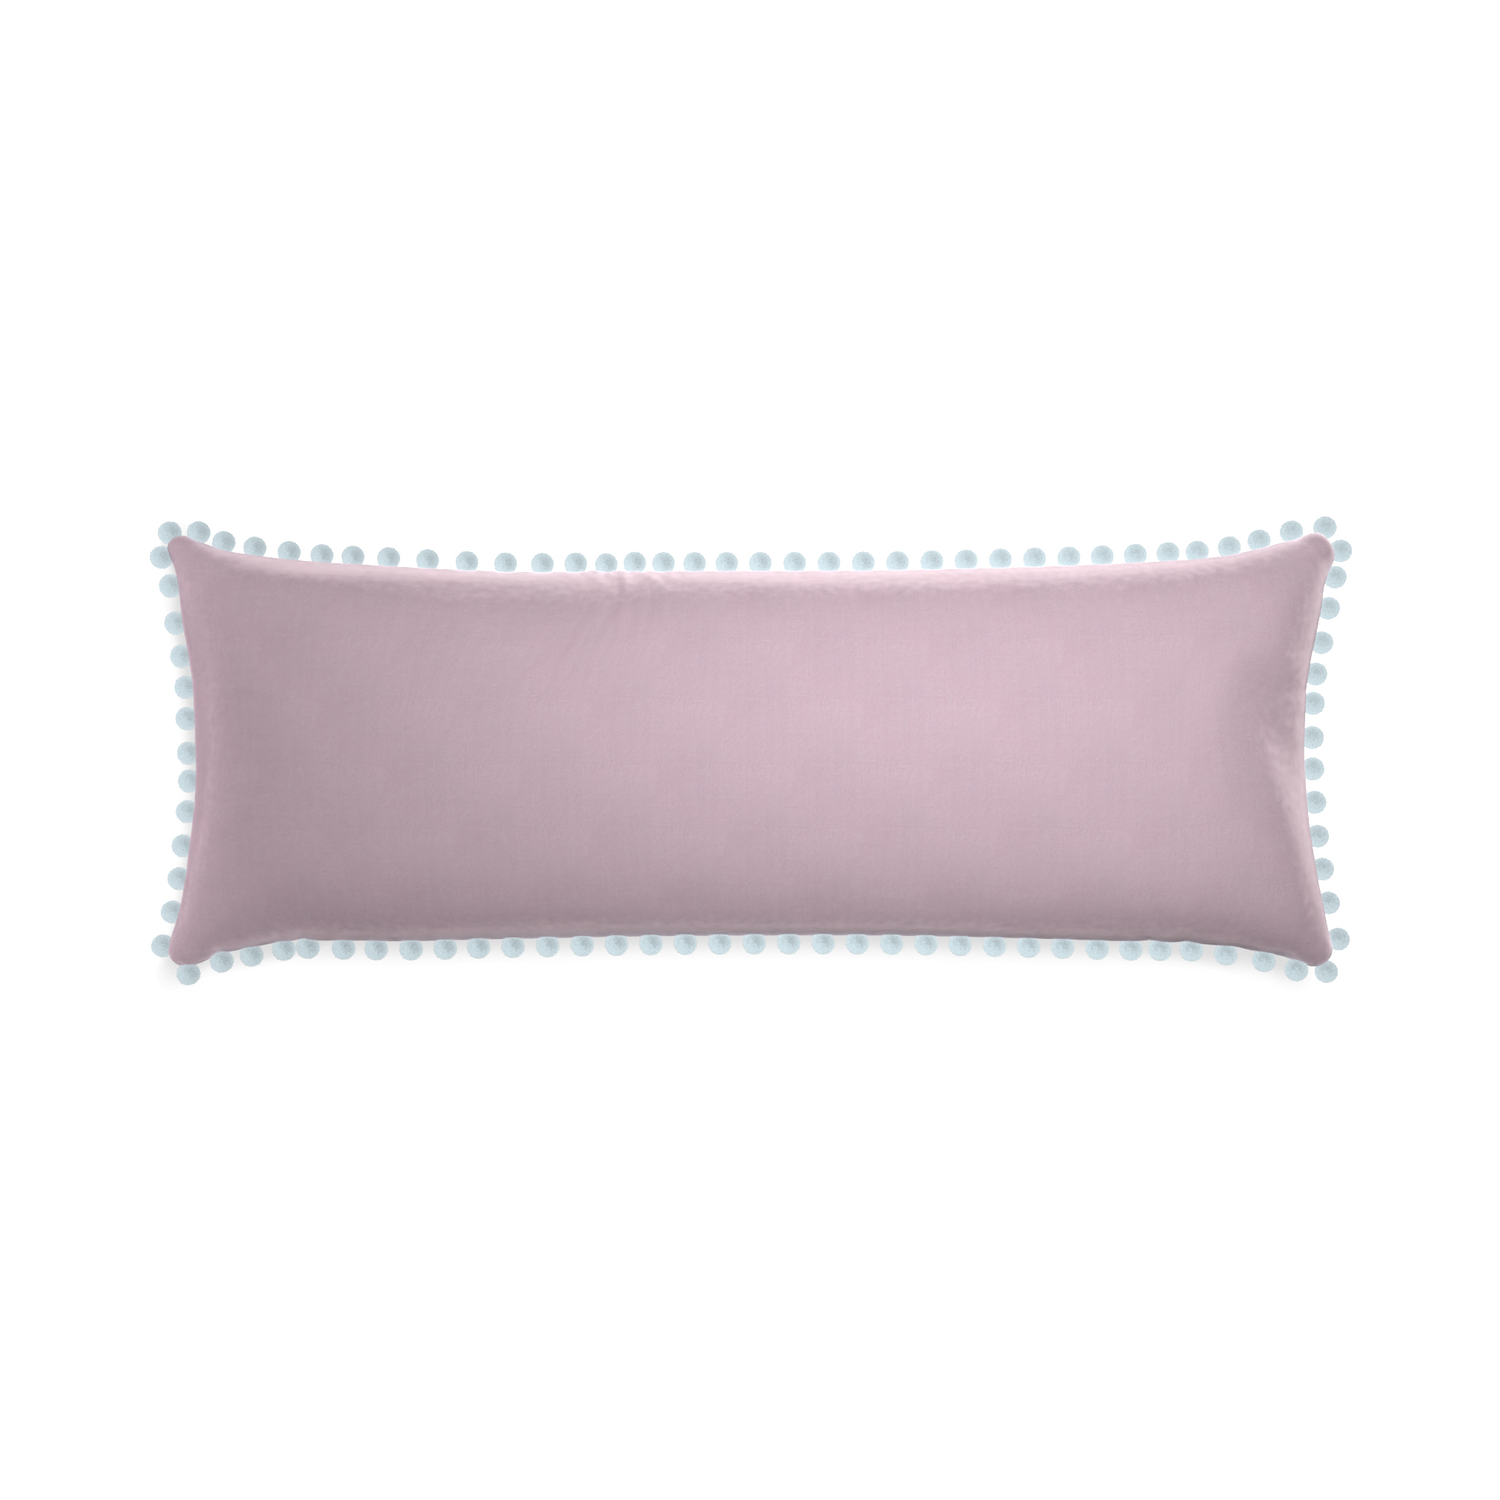 rectangle lilac velvet pillow with light blue pom poms